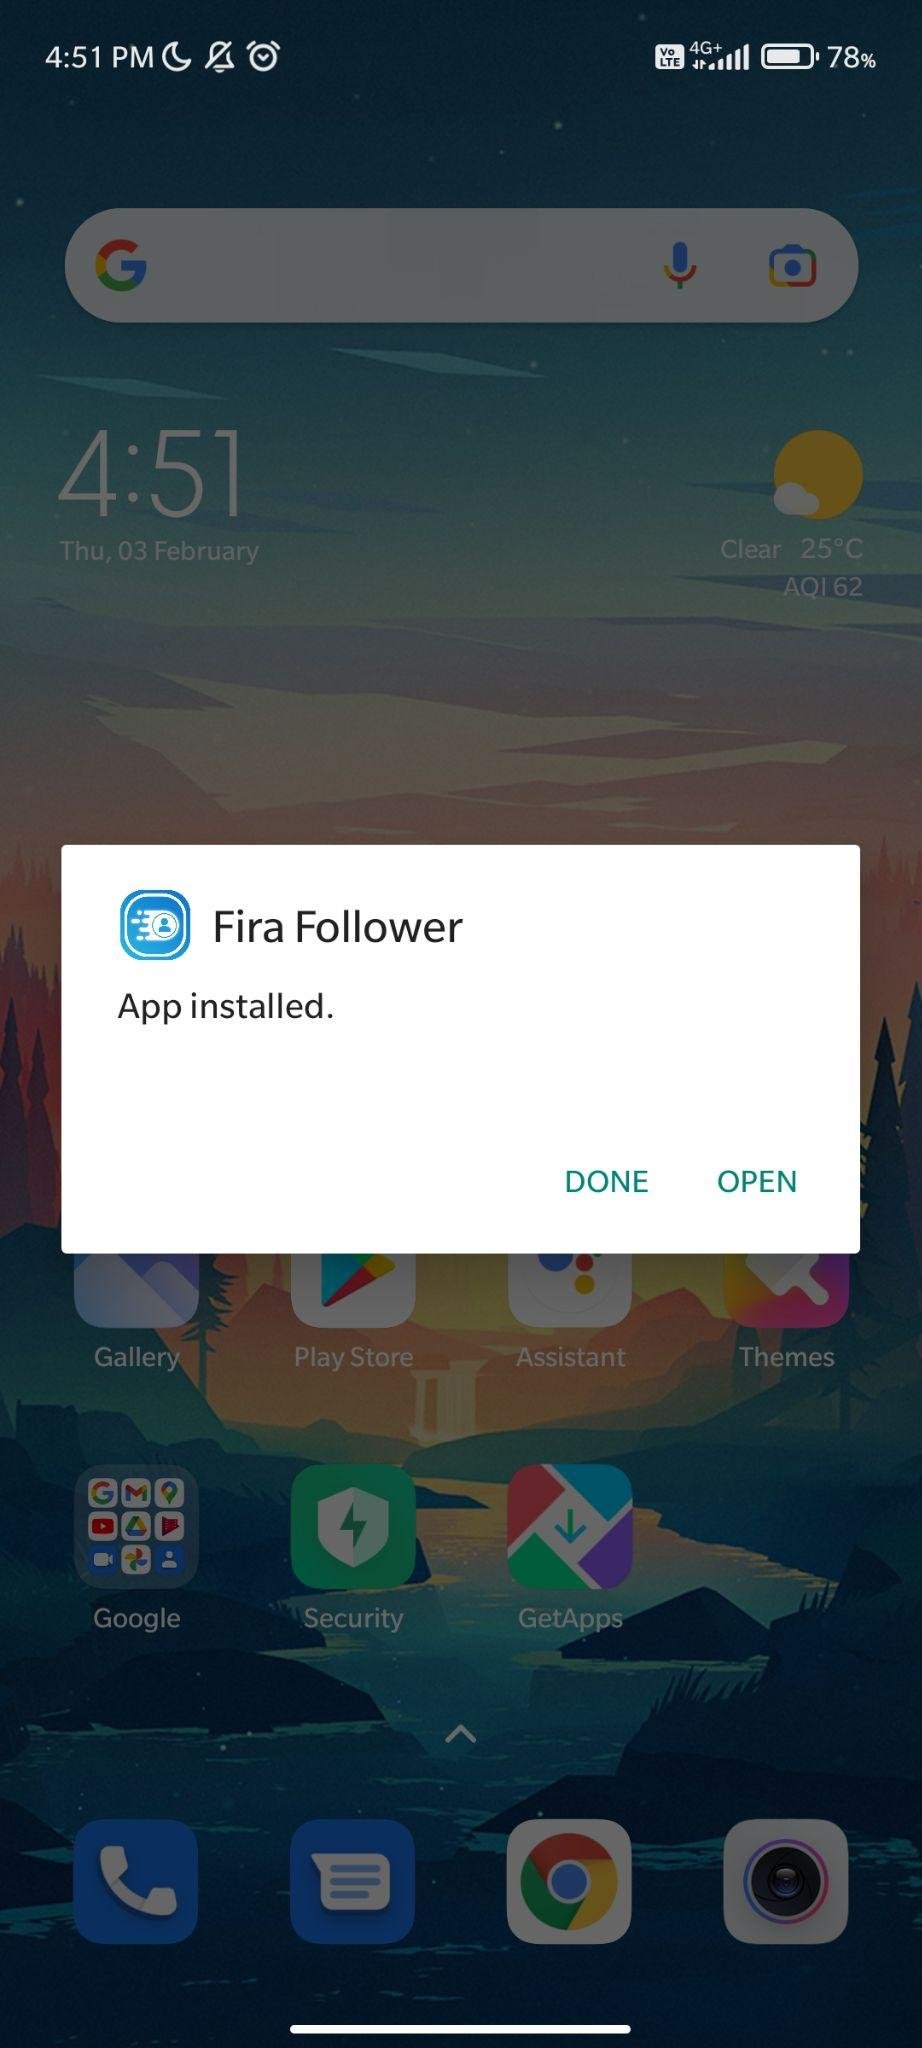 fira follower apk installed